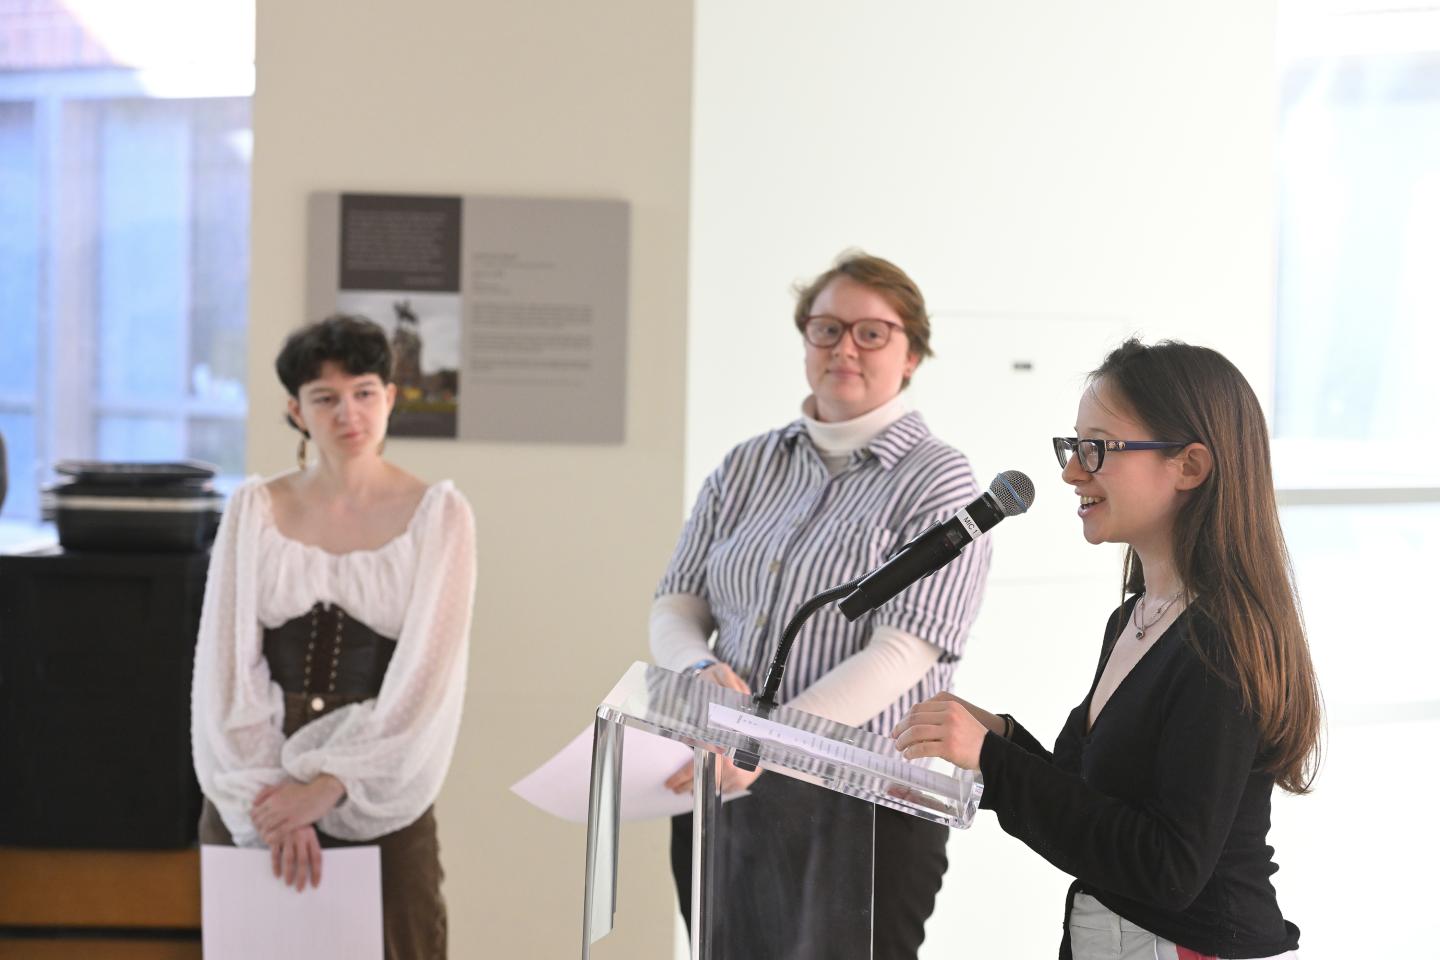 Student speakers Michaella Huertas, Em Ambrosius, and Anna Vakhnovetsky